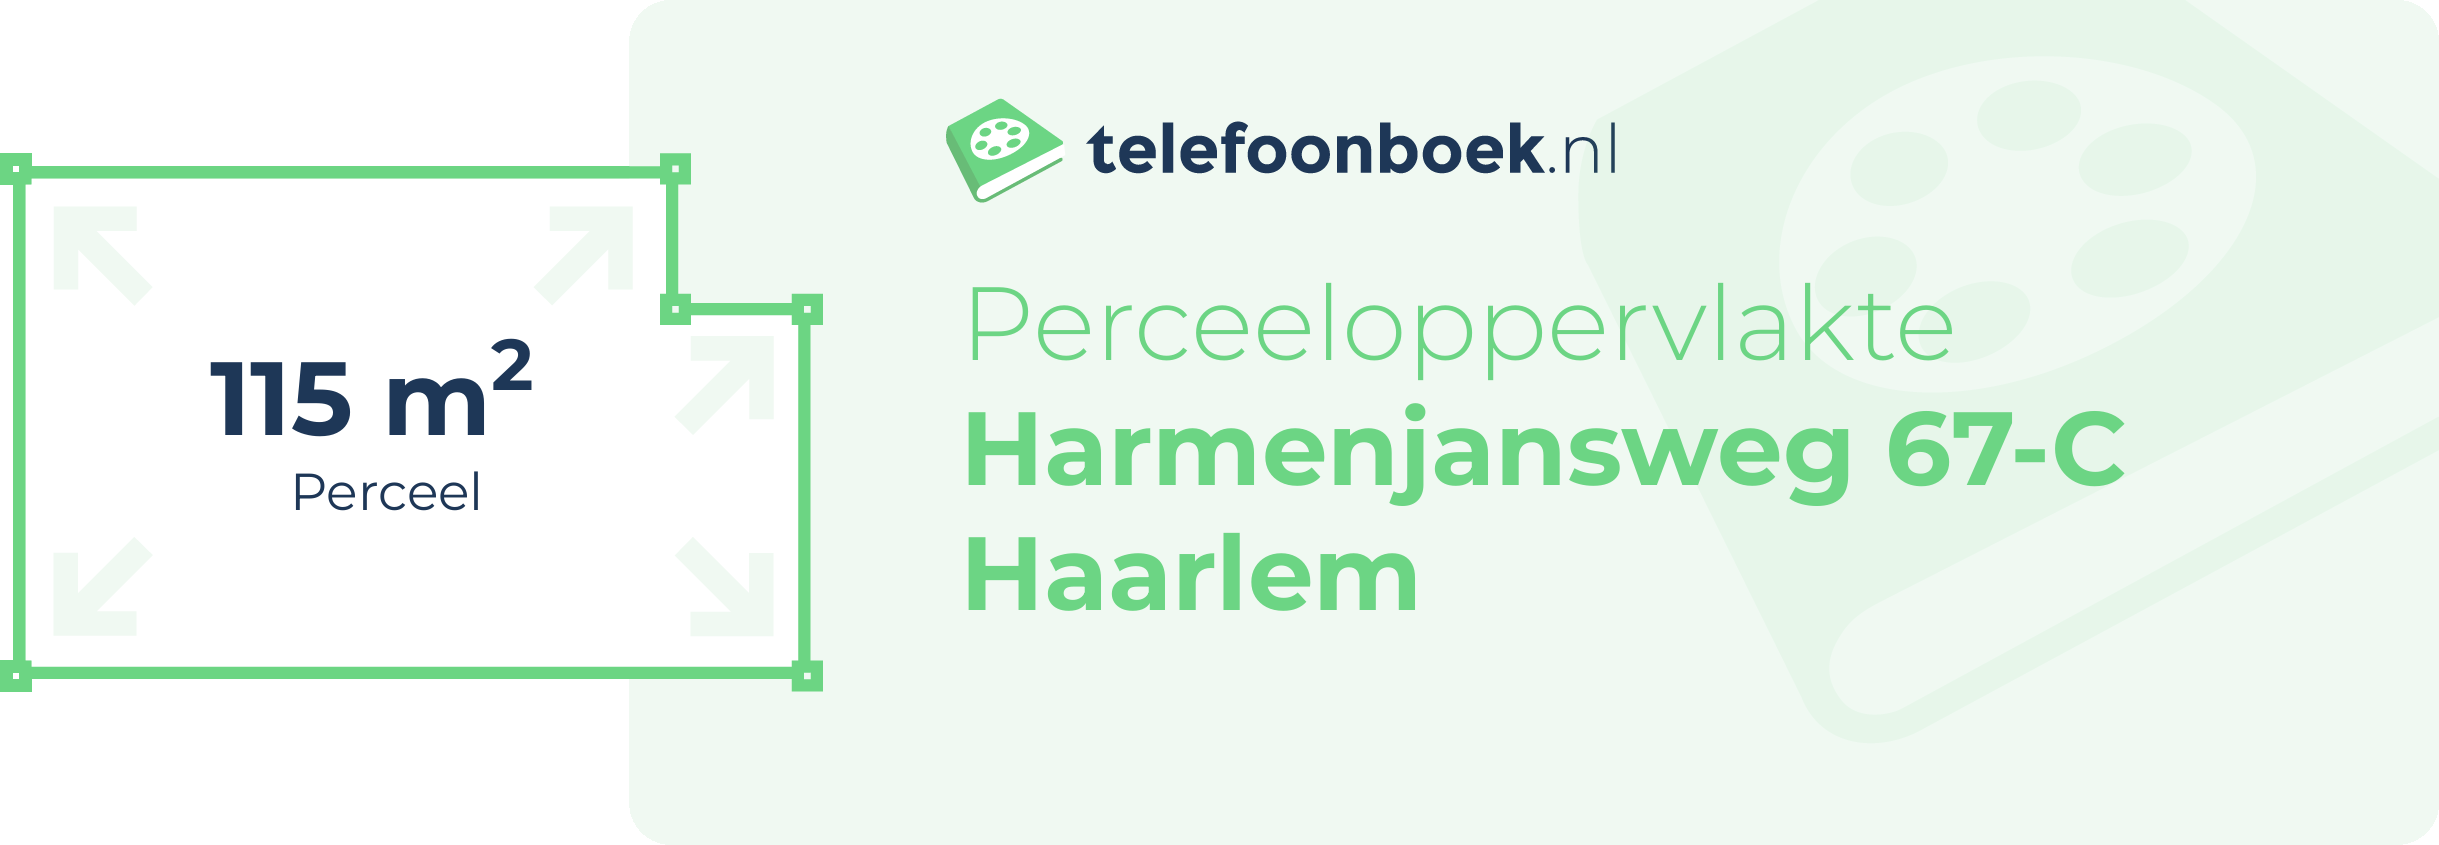 Perceeloppervlakte Harmenjansweg 67-C Haarlem